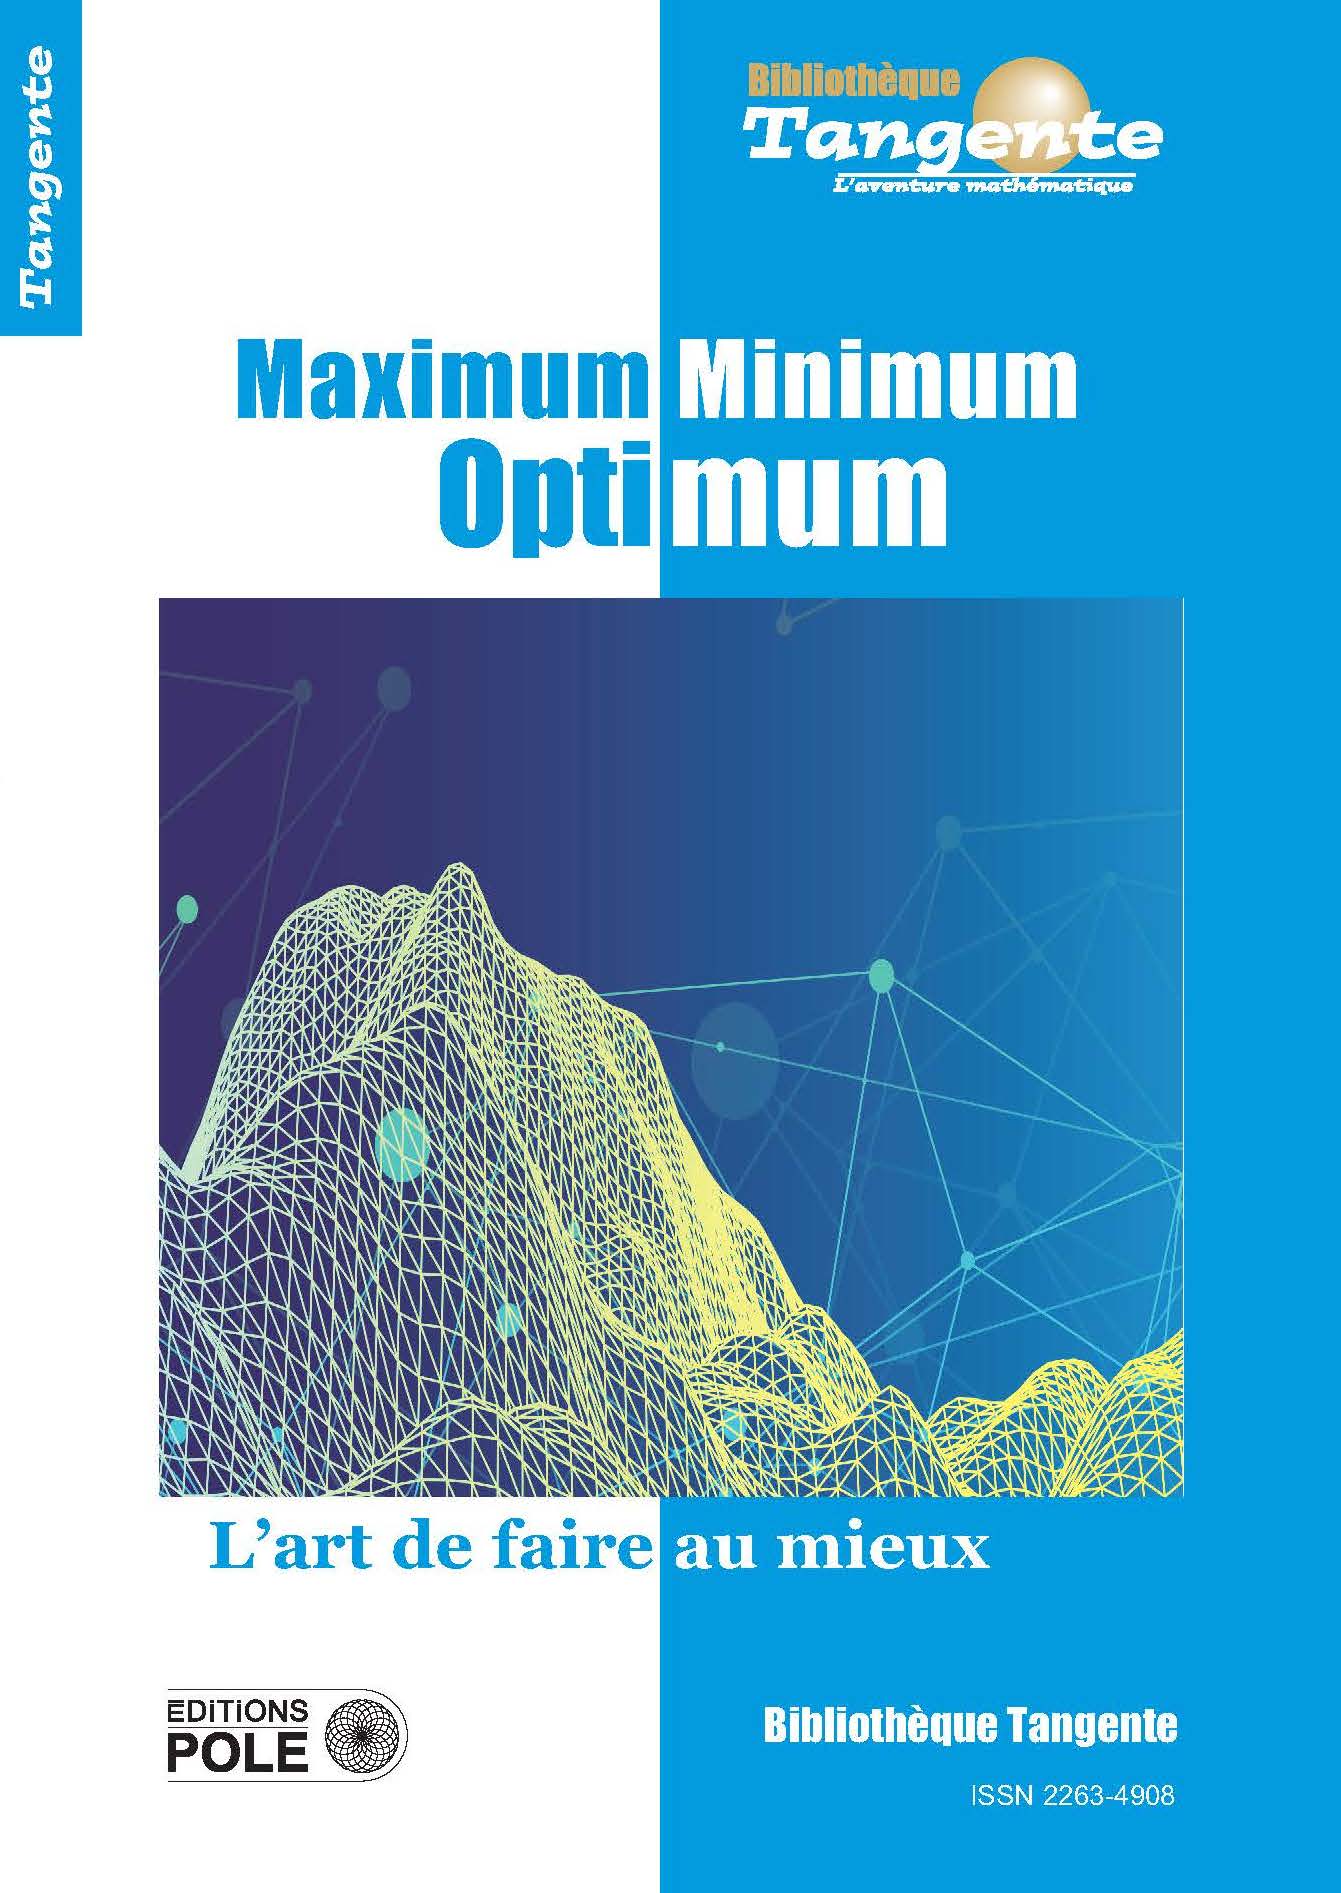 image Bib 72 - Maximum Minimum Optimum